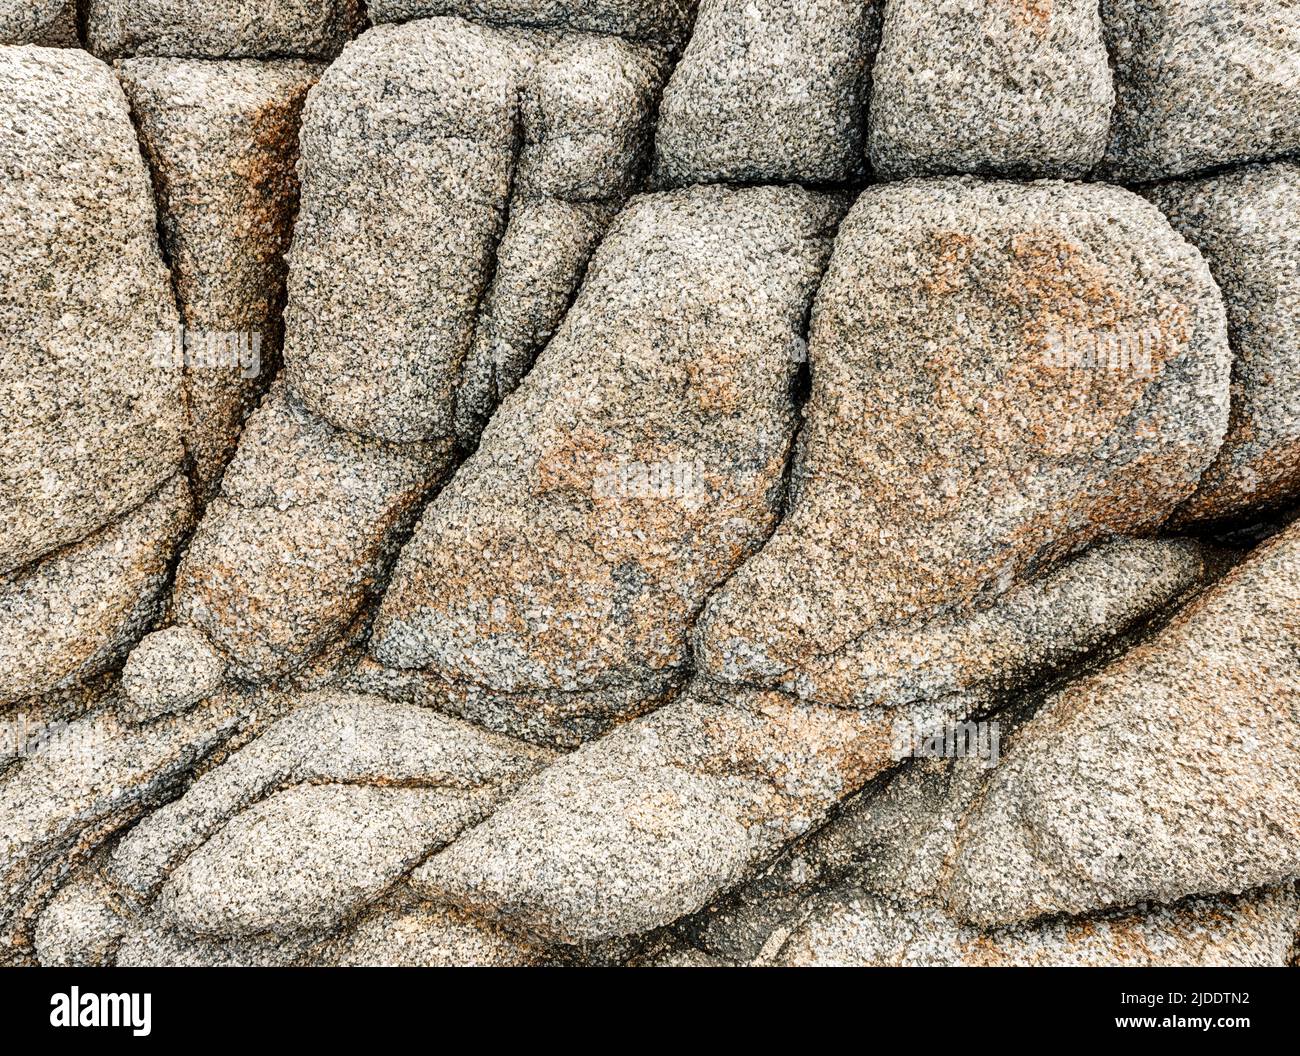 Granite boulders near Ajaccio, in Corsica, are arranged in a natural pattern. Stock Photo